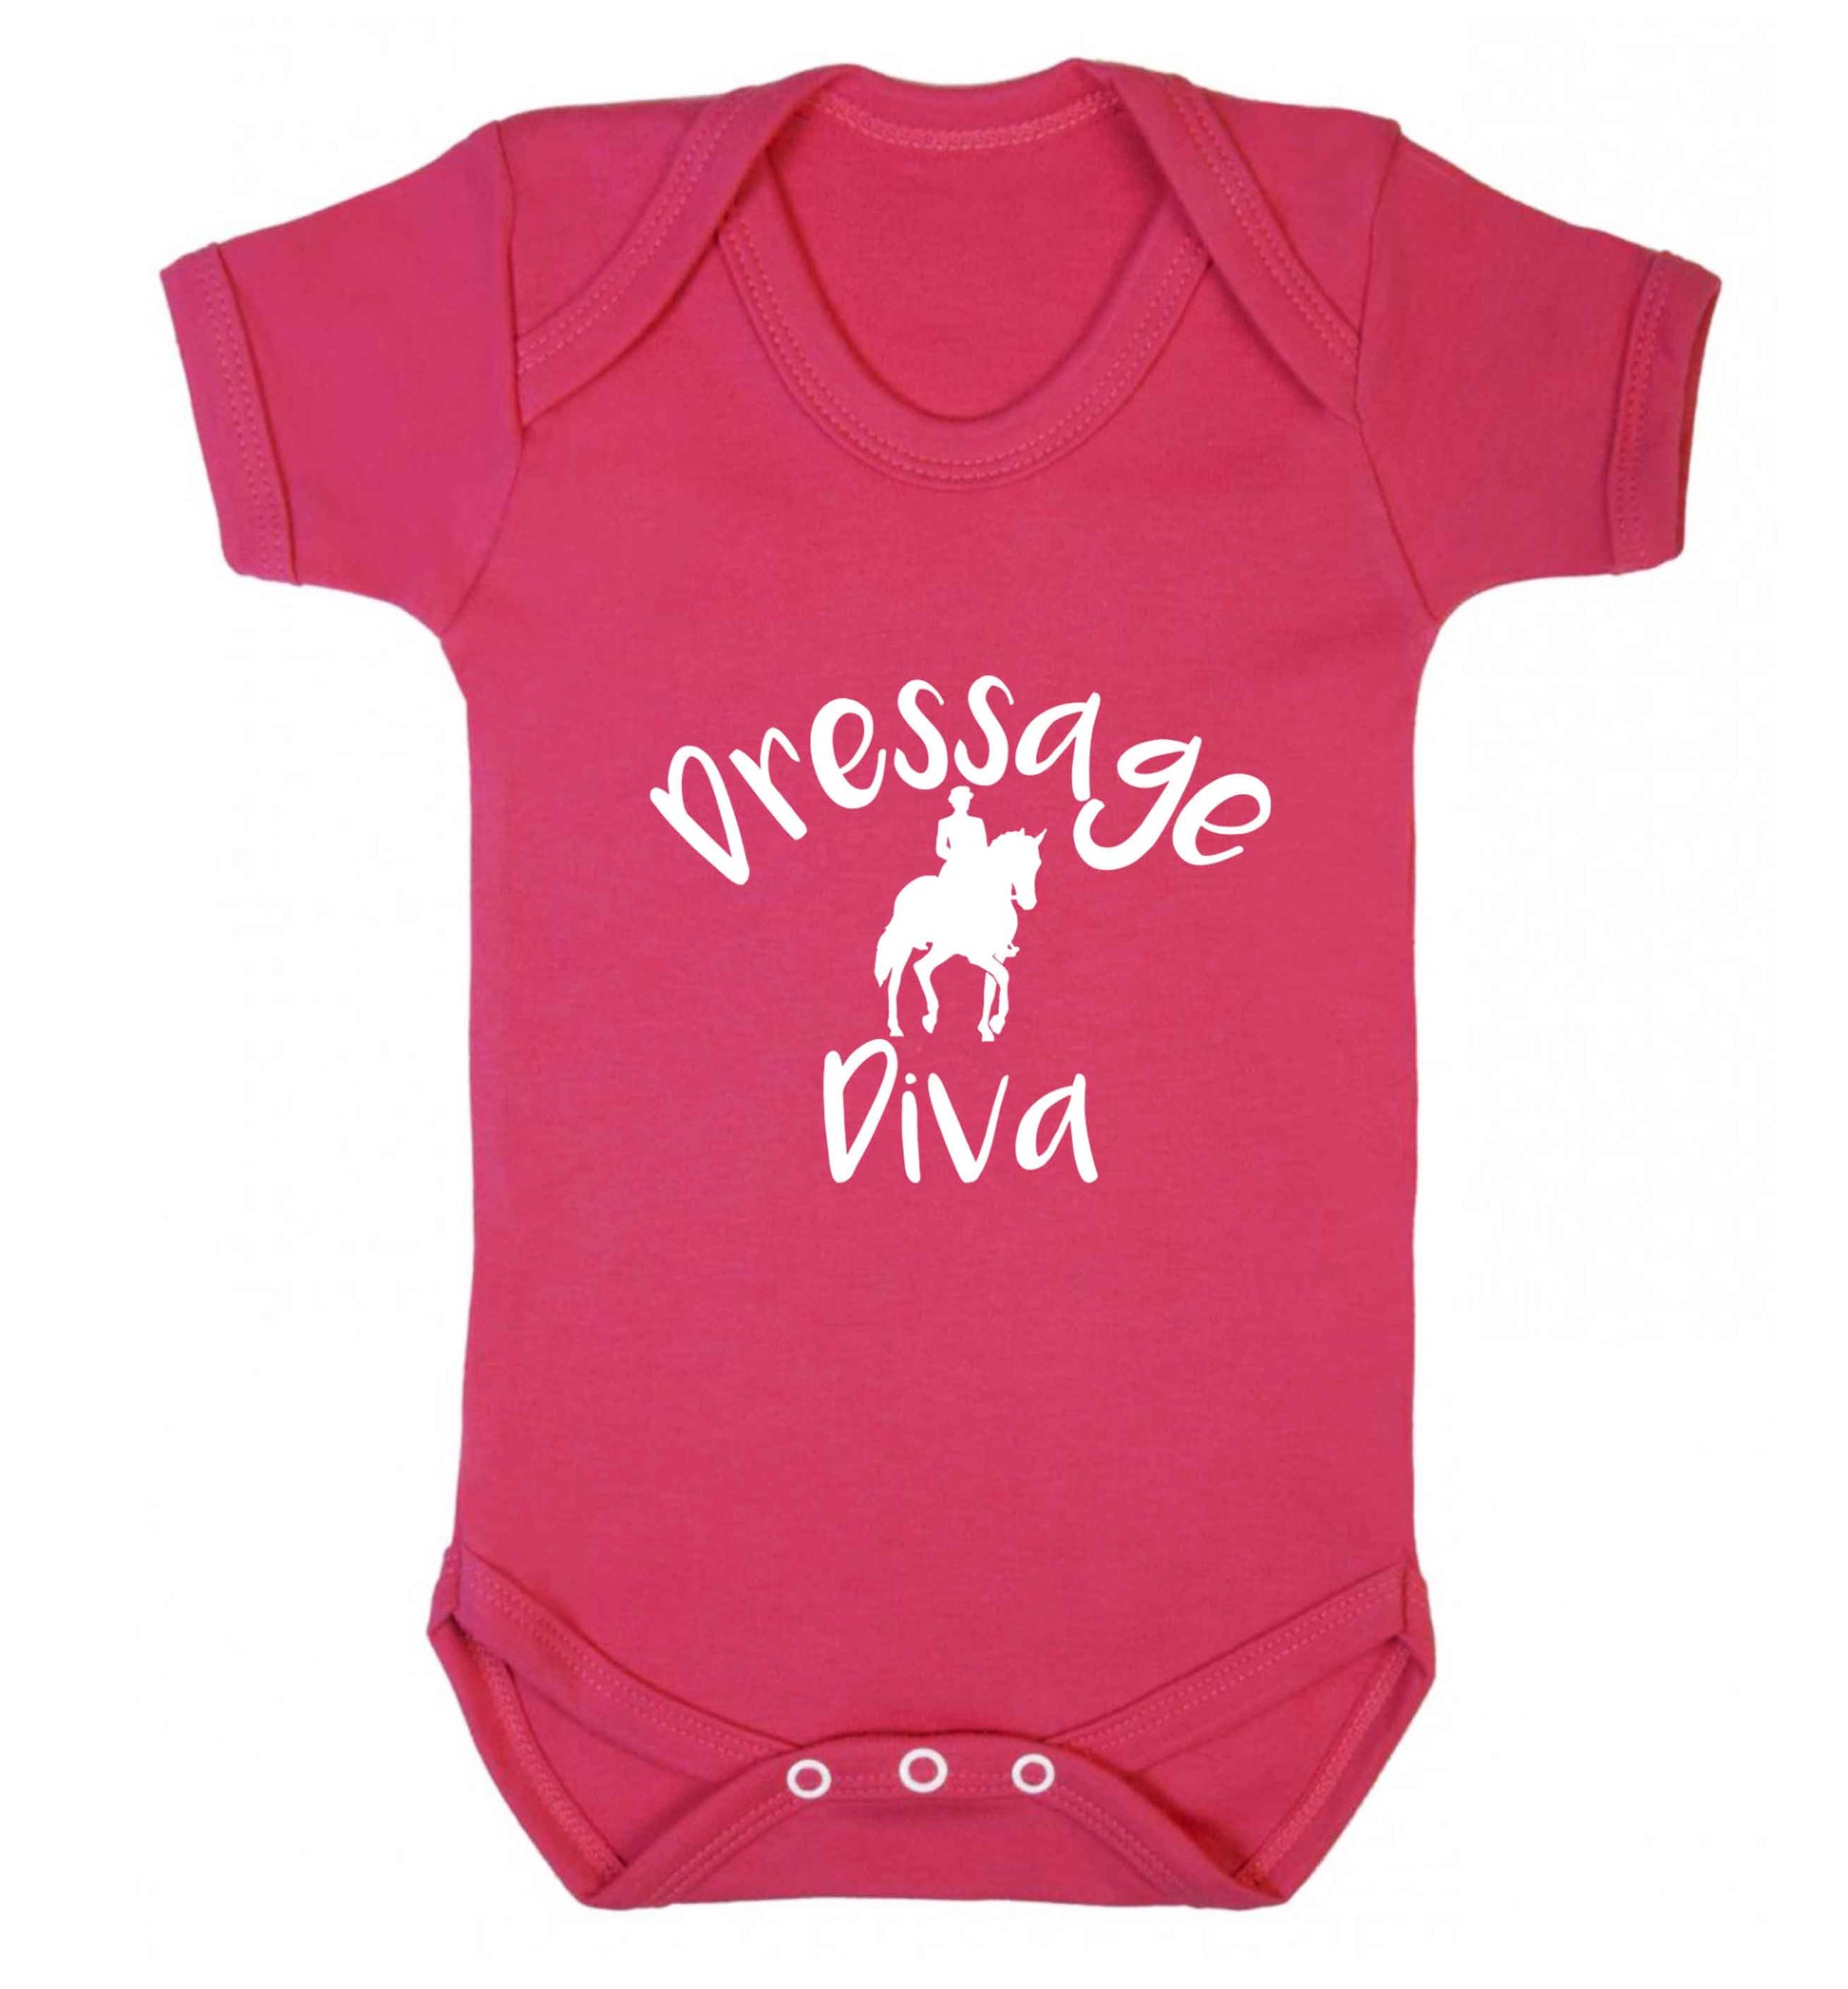 Dressage diva baby vest dark pink 18-24 months